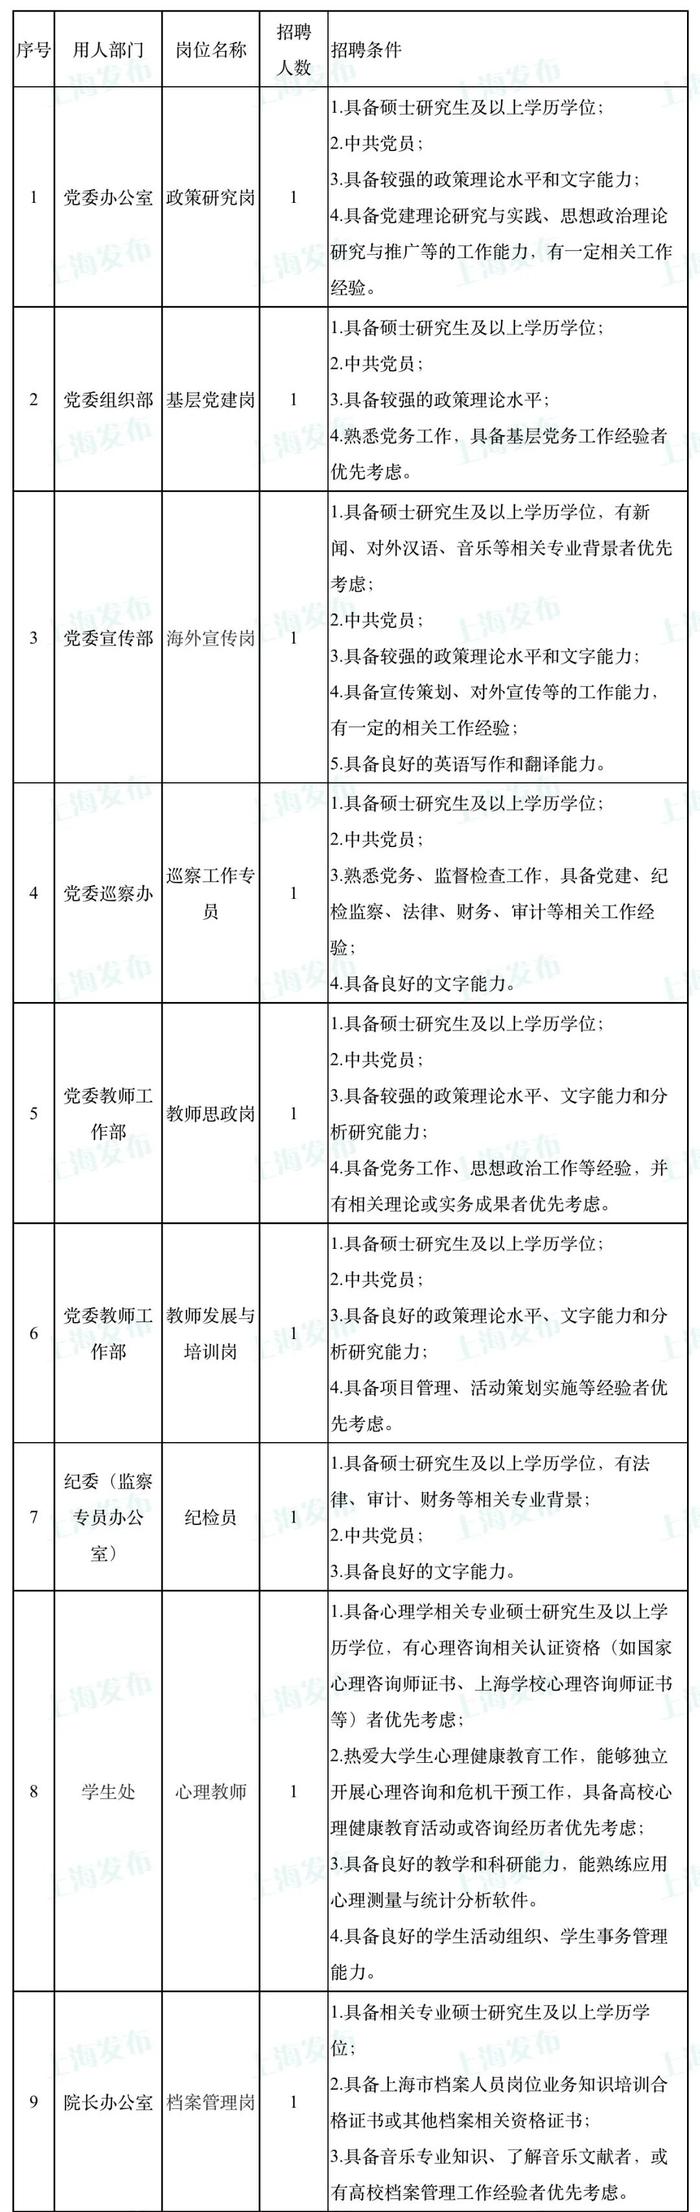 【就业】上海音乐学院招聘20名工作人员，7月17日前可报名